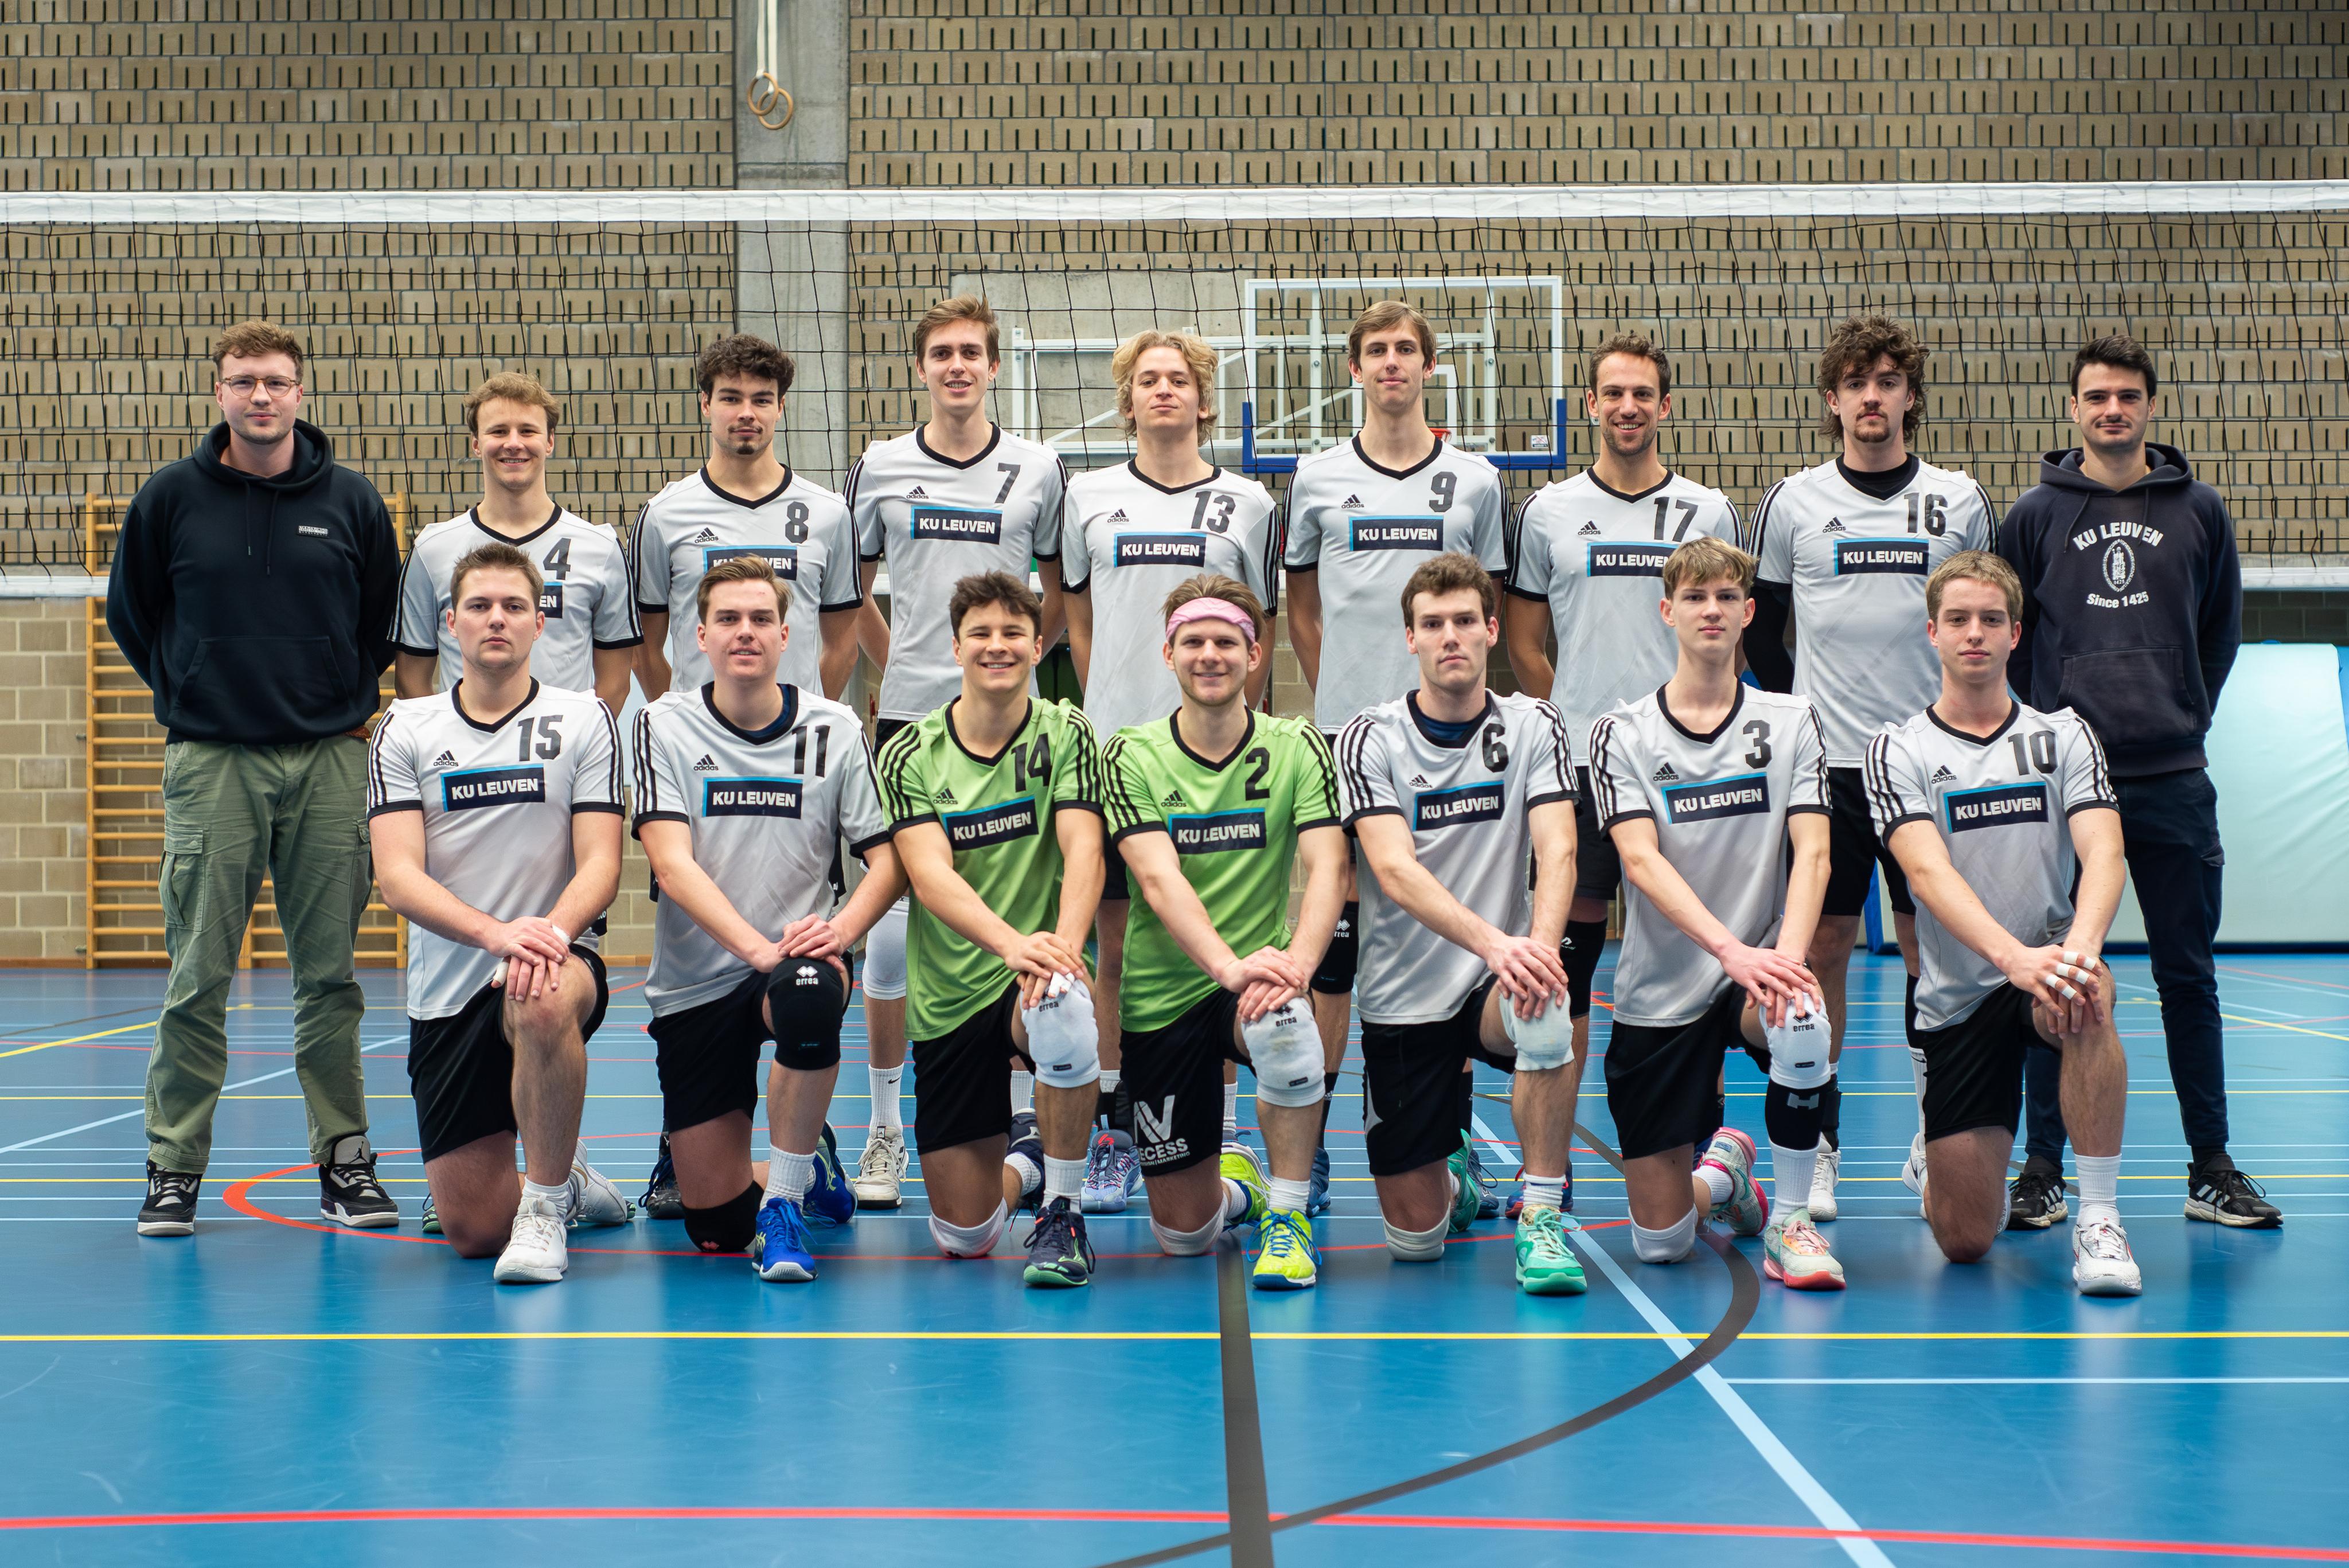 Association KU Leuven Volleyball Men